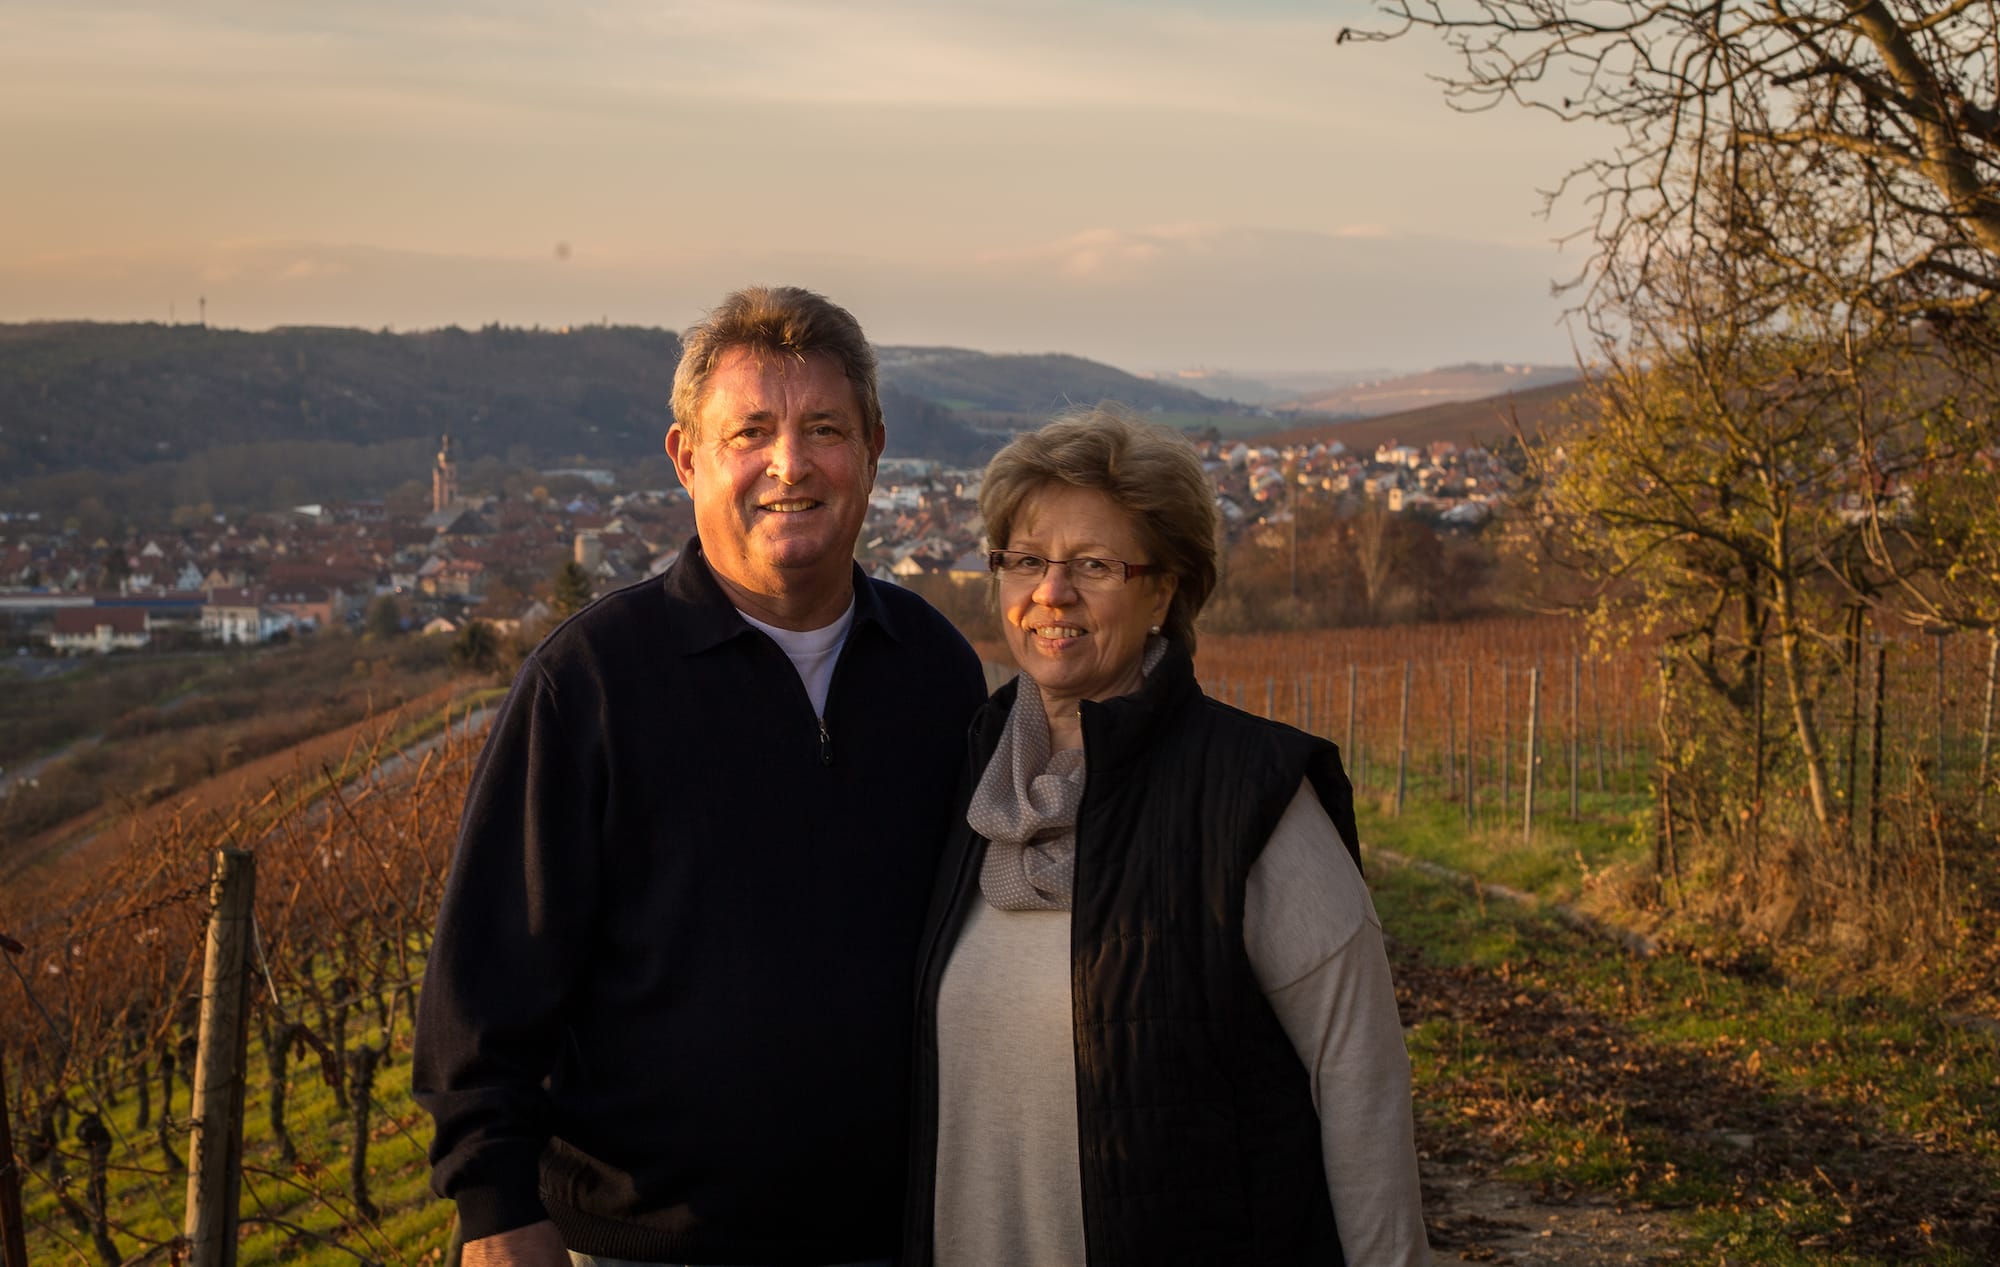 Die Winzer vom Weingut Max Markert sind unsere Müller-Thurgau Winzer des Jahres